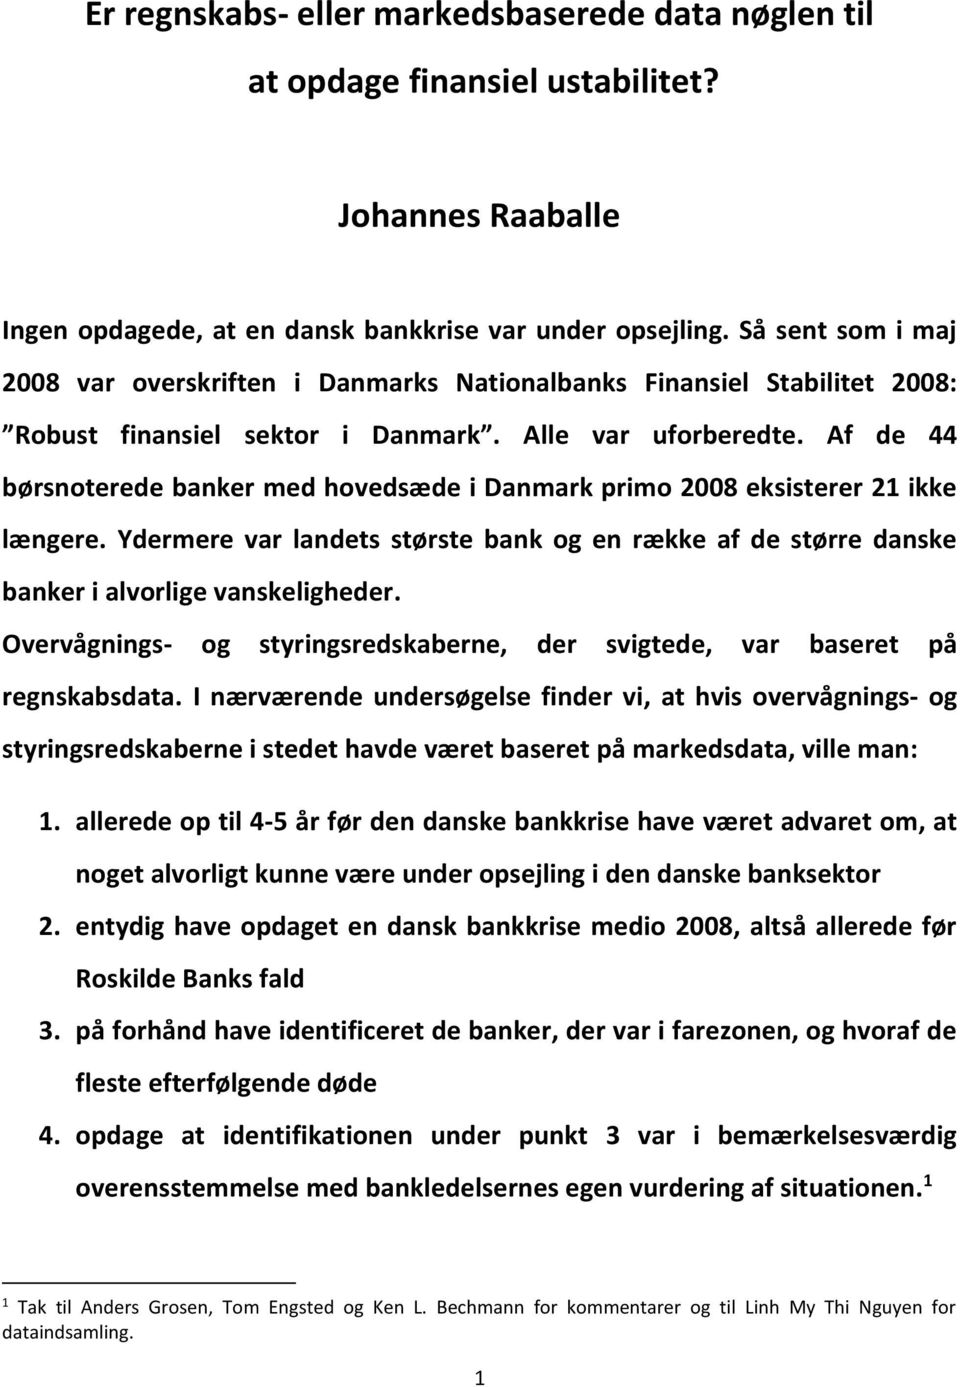 Af de 44 børsnoterede banker med hovedsæde i Danmark primo 2008 eksisterer 21 ikke længere. Ydermere var landets største bank og en række af de større danske banker i alvorlige vanskeligheder.